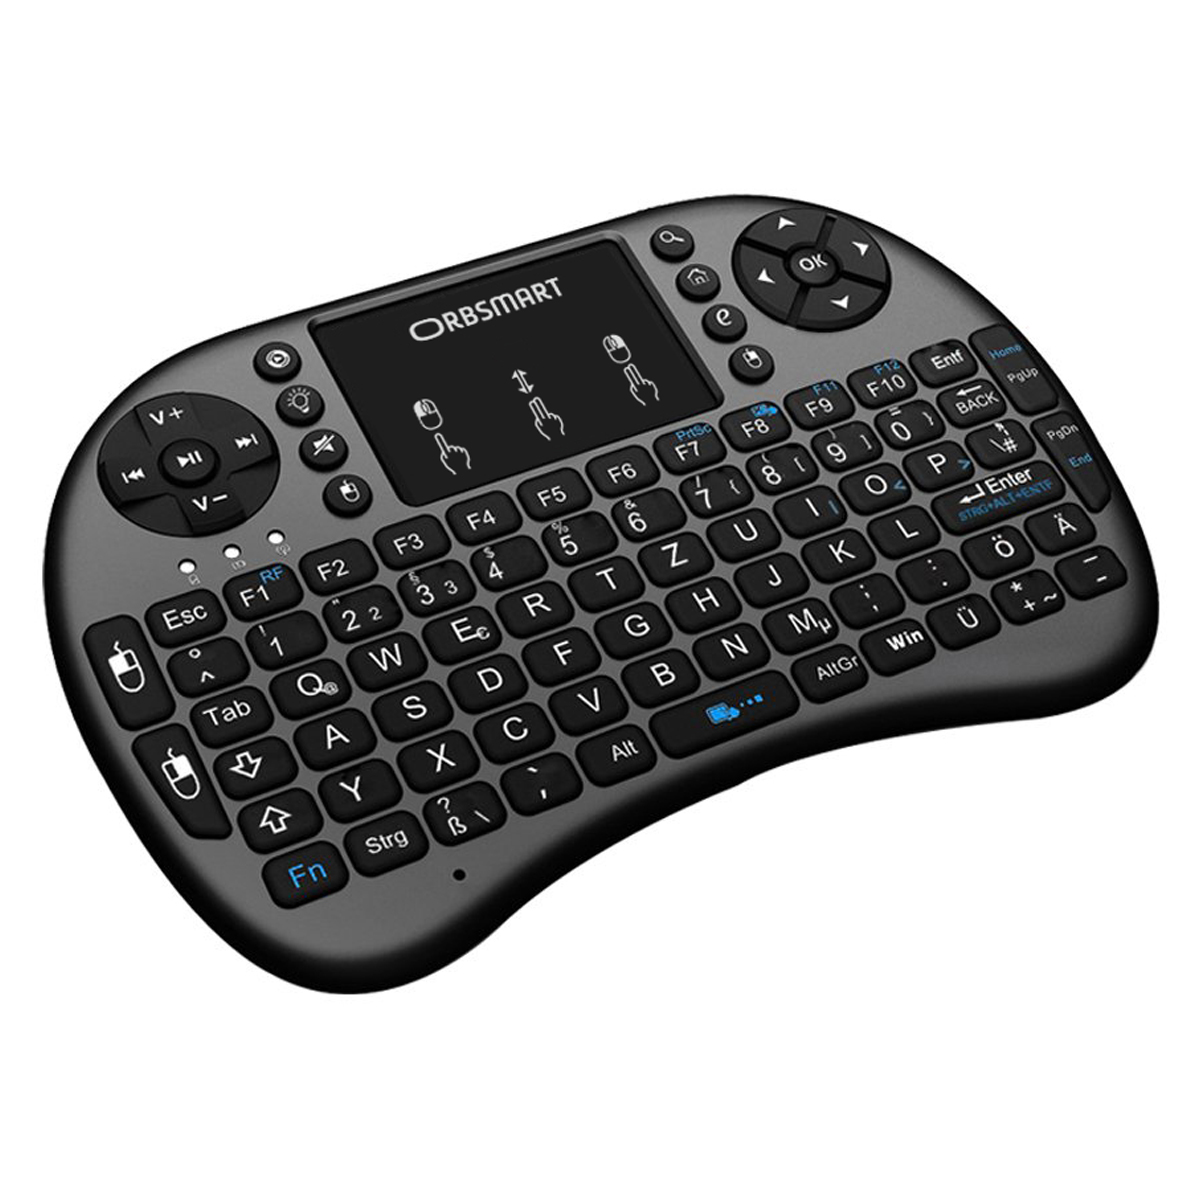 ORBSMART AM-2 kabellos / Wireless deutsches mit LED-Beleuchtung, & Mini-Tastatur Keyboard Touchpad inkl. Tastaturlayout